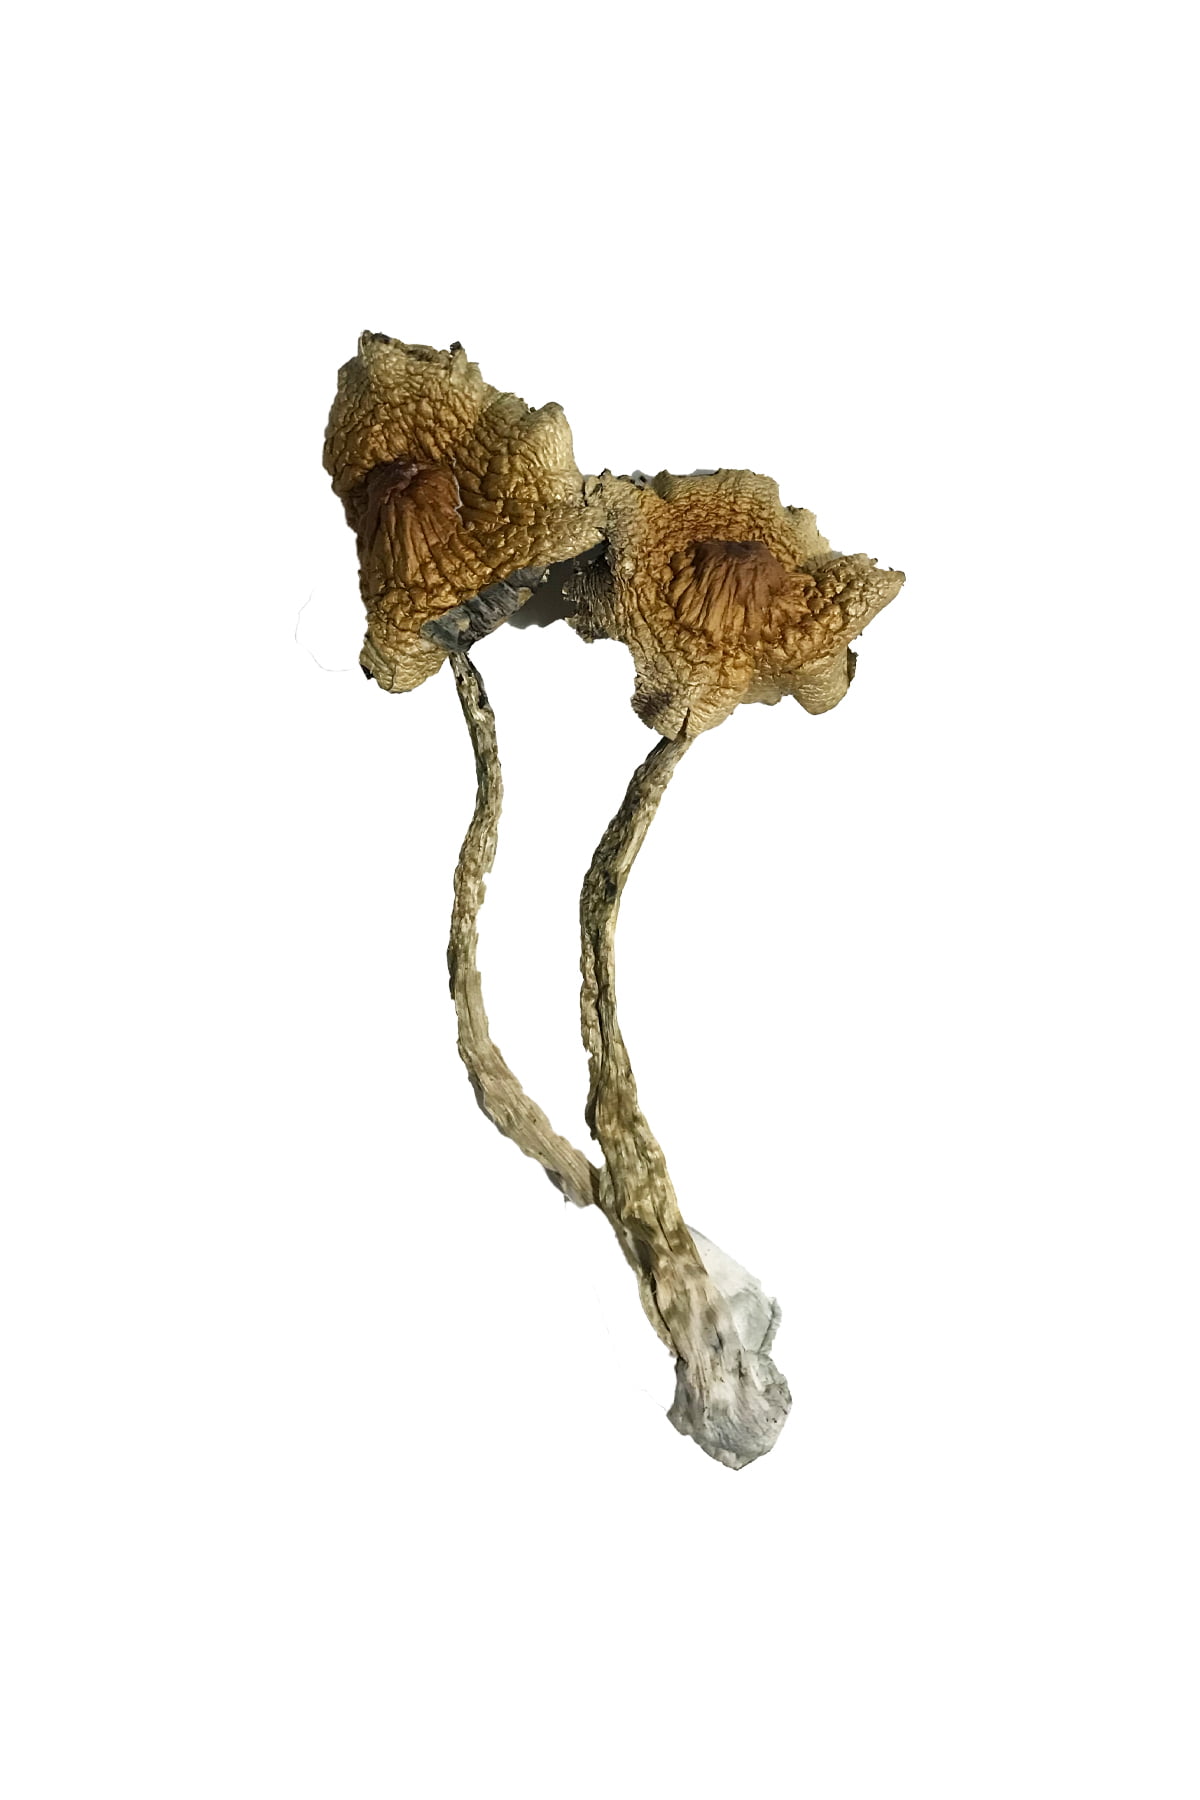 Cuban Mushrooms